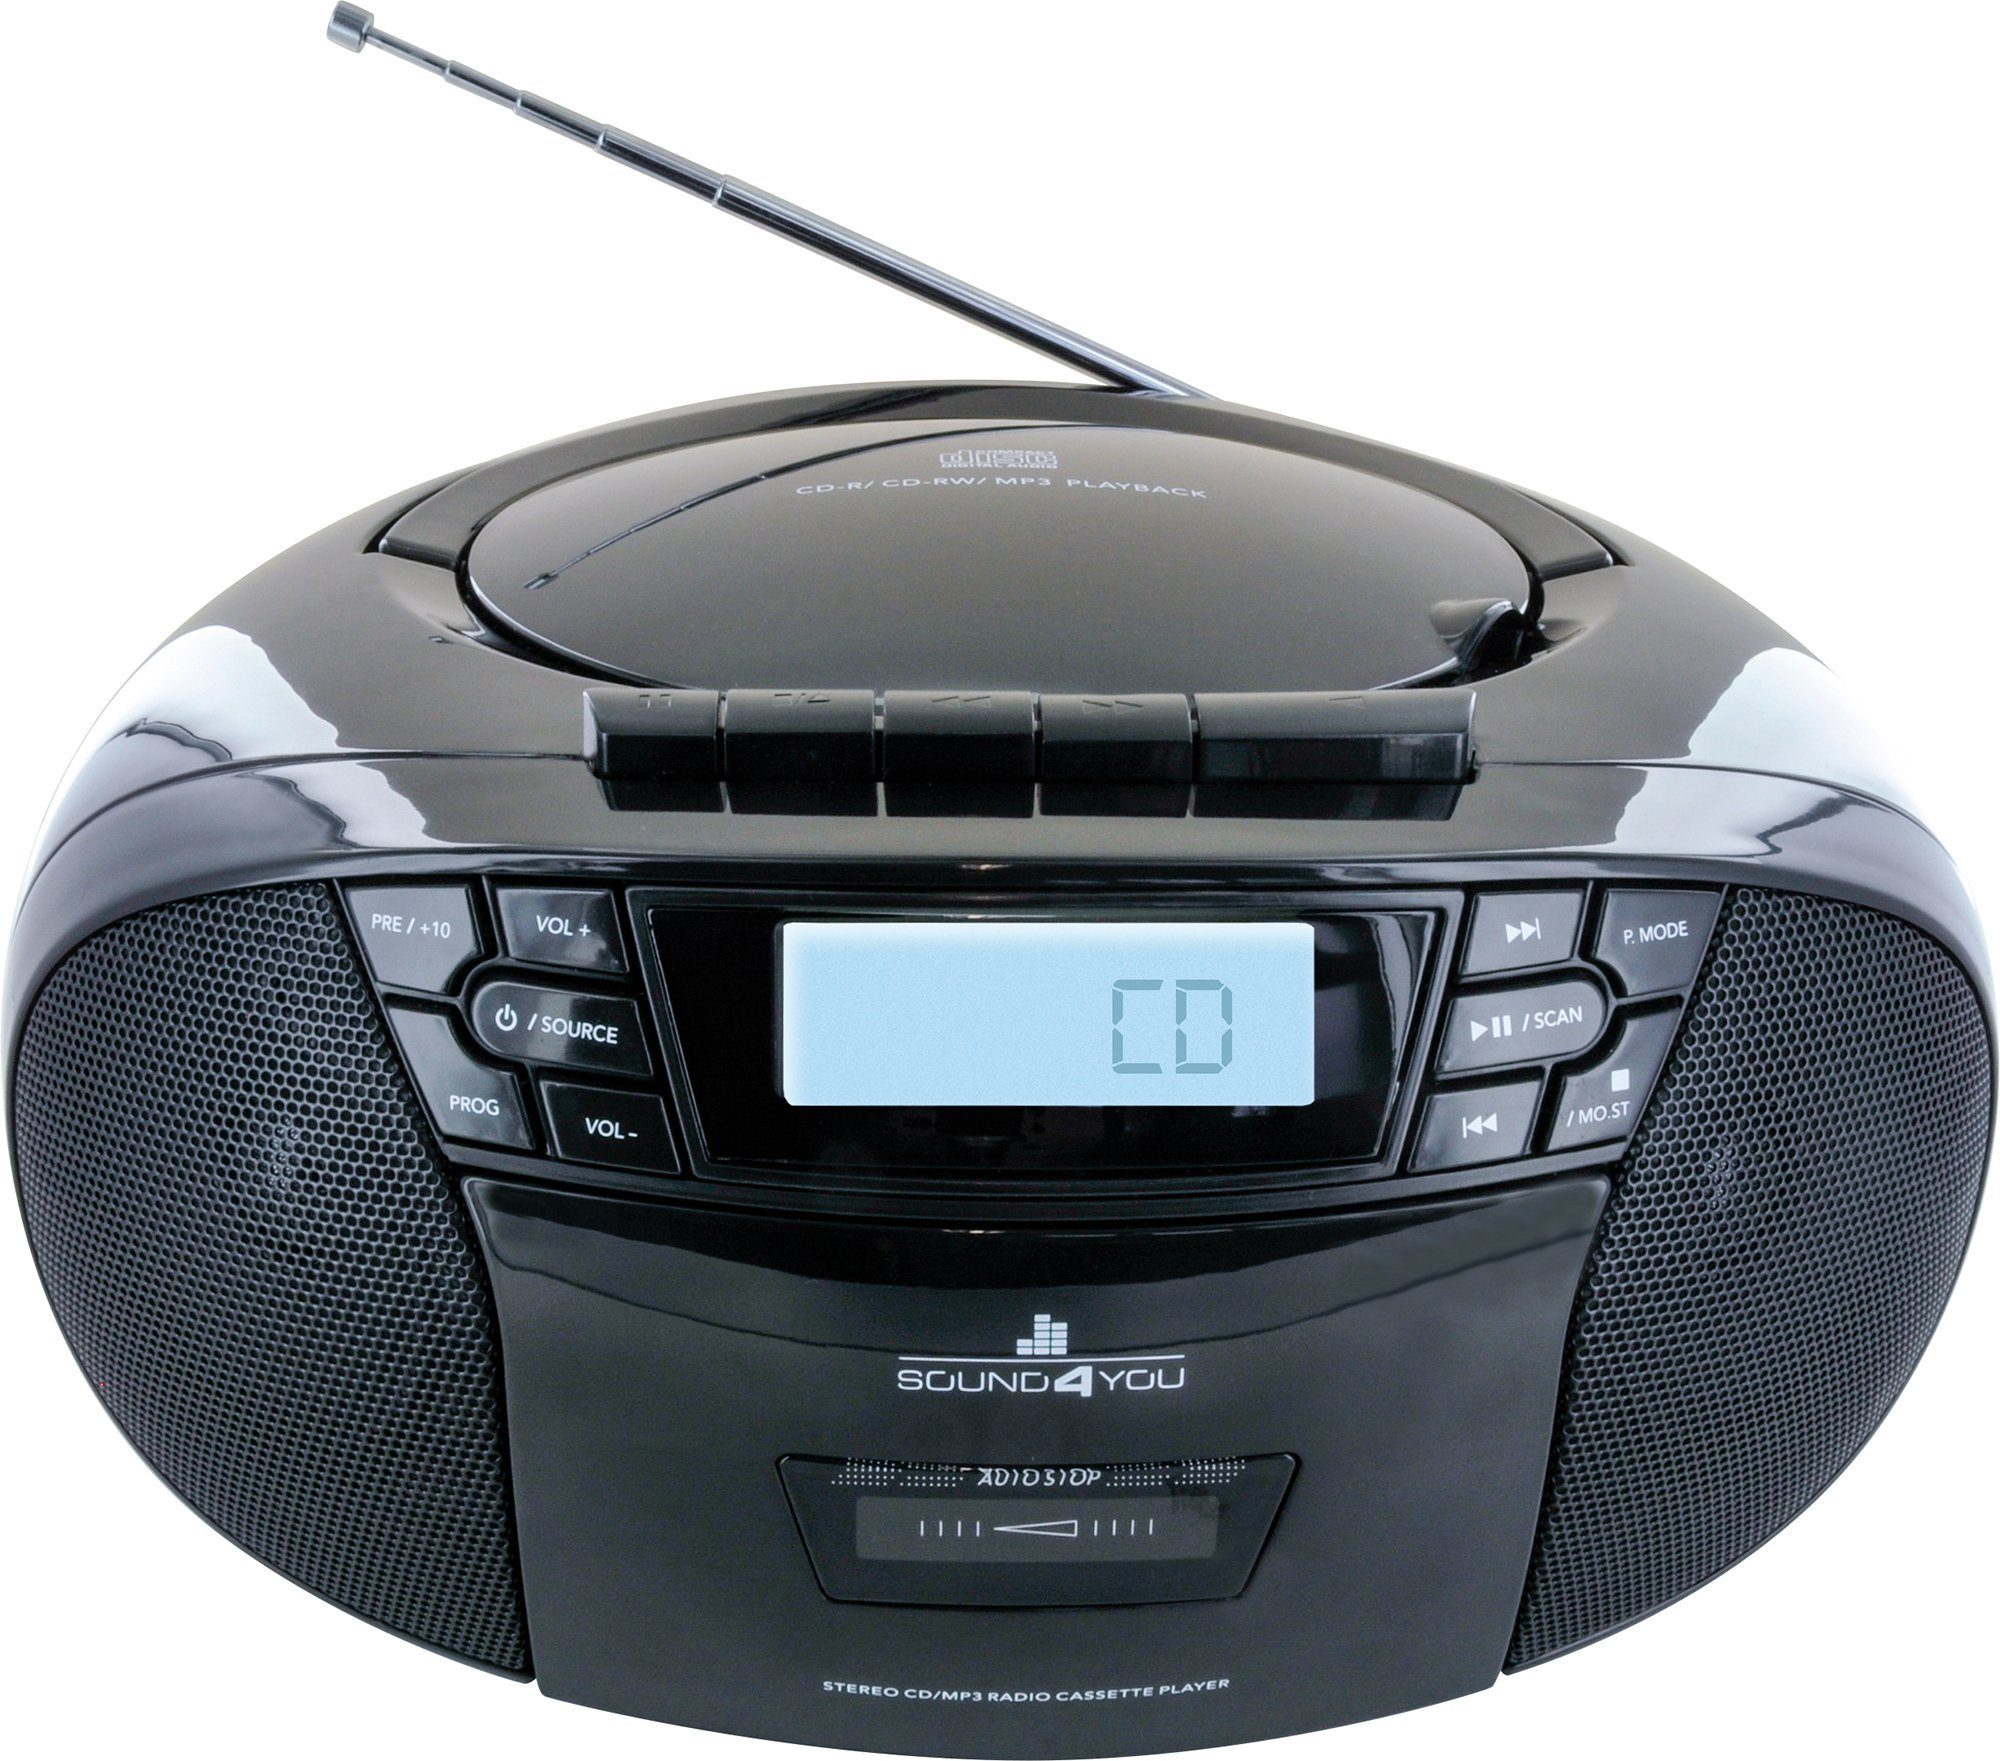 W, Musikgenuss, Schwaiger oder 658026 per Netzkabel mit Kassettendeck), CD-Player, (FM, Boombox Stereo Boombox 2.4 batteriebetrieben